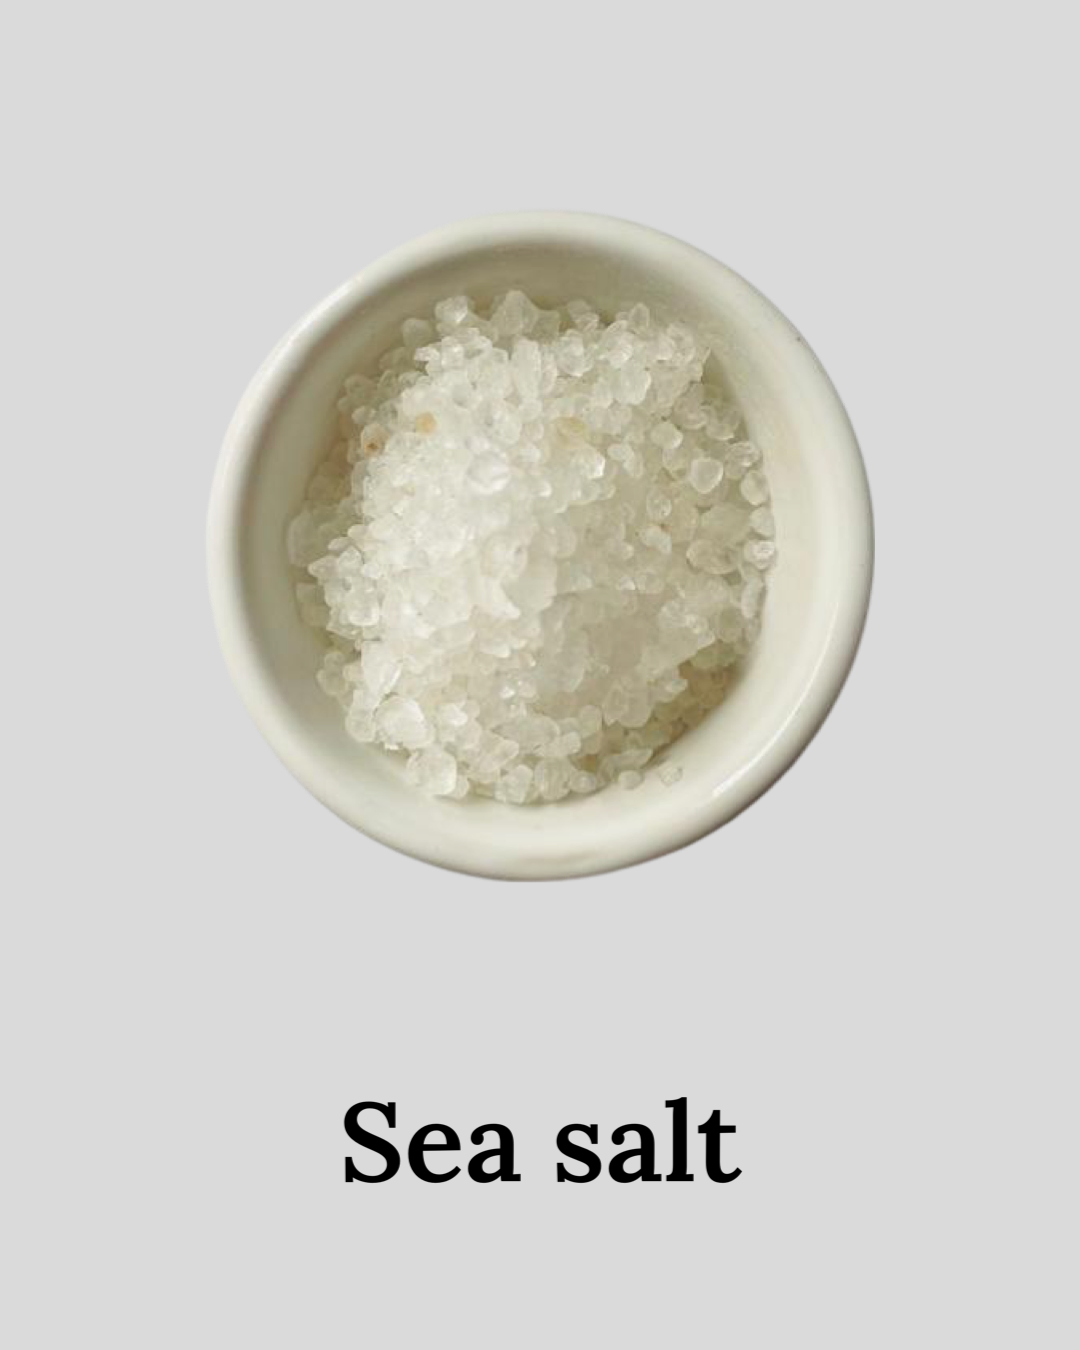 Dead sea salt